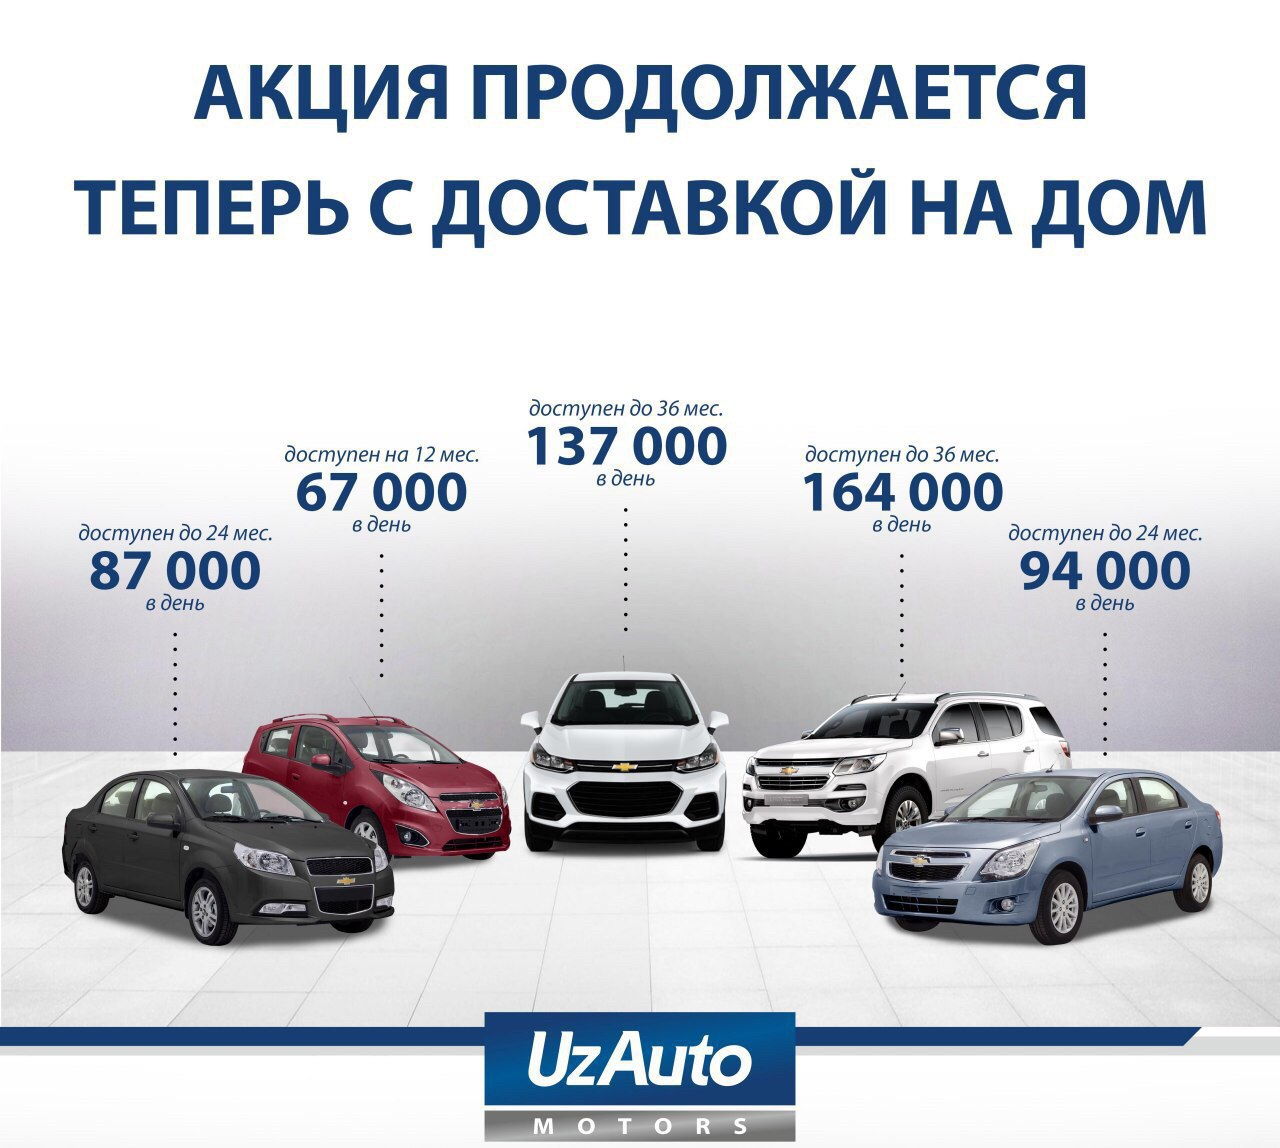 UzAuto Motors предлагает автомобили в рассрочку до 36 месяцев с доставкой на дом